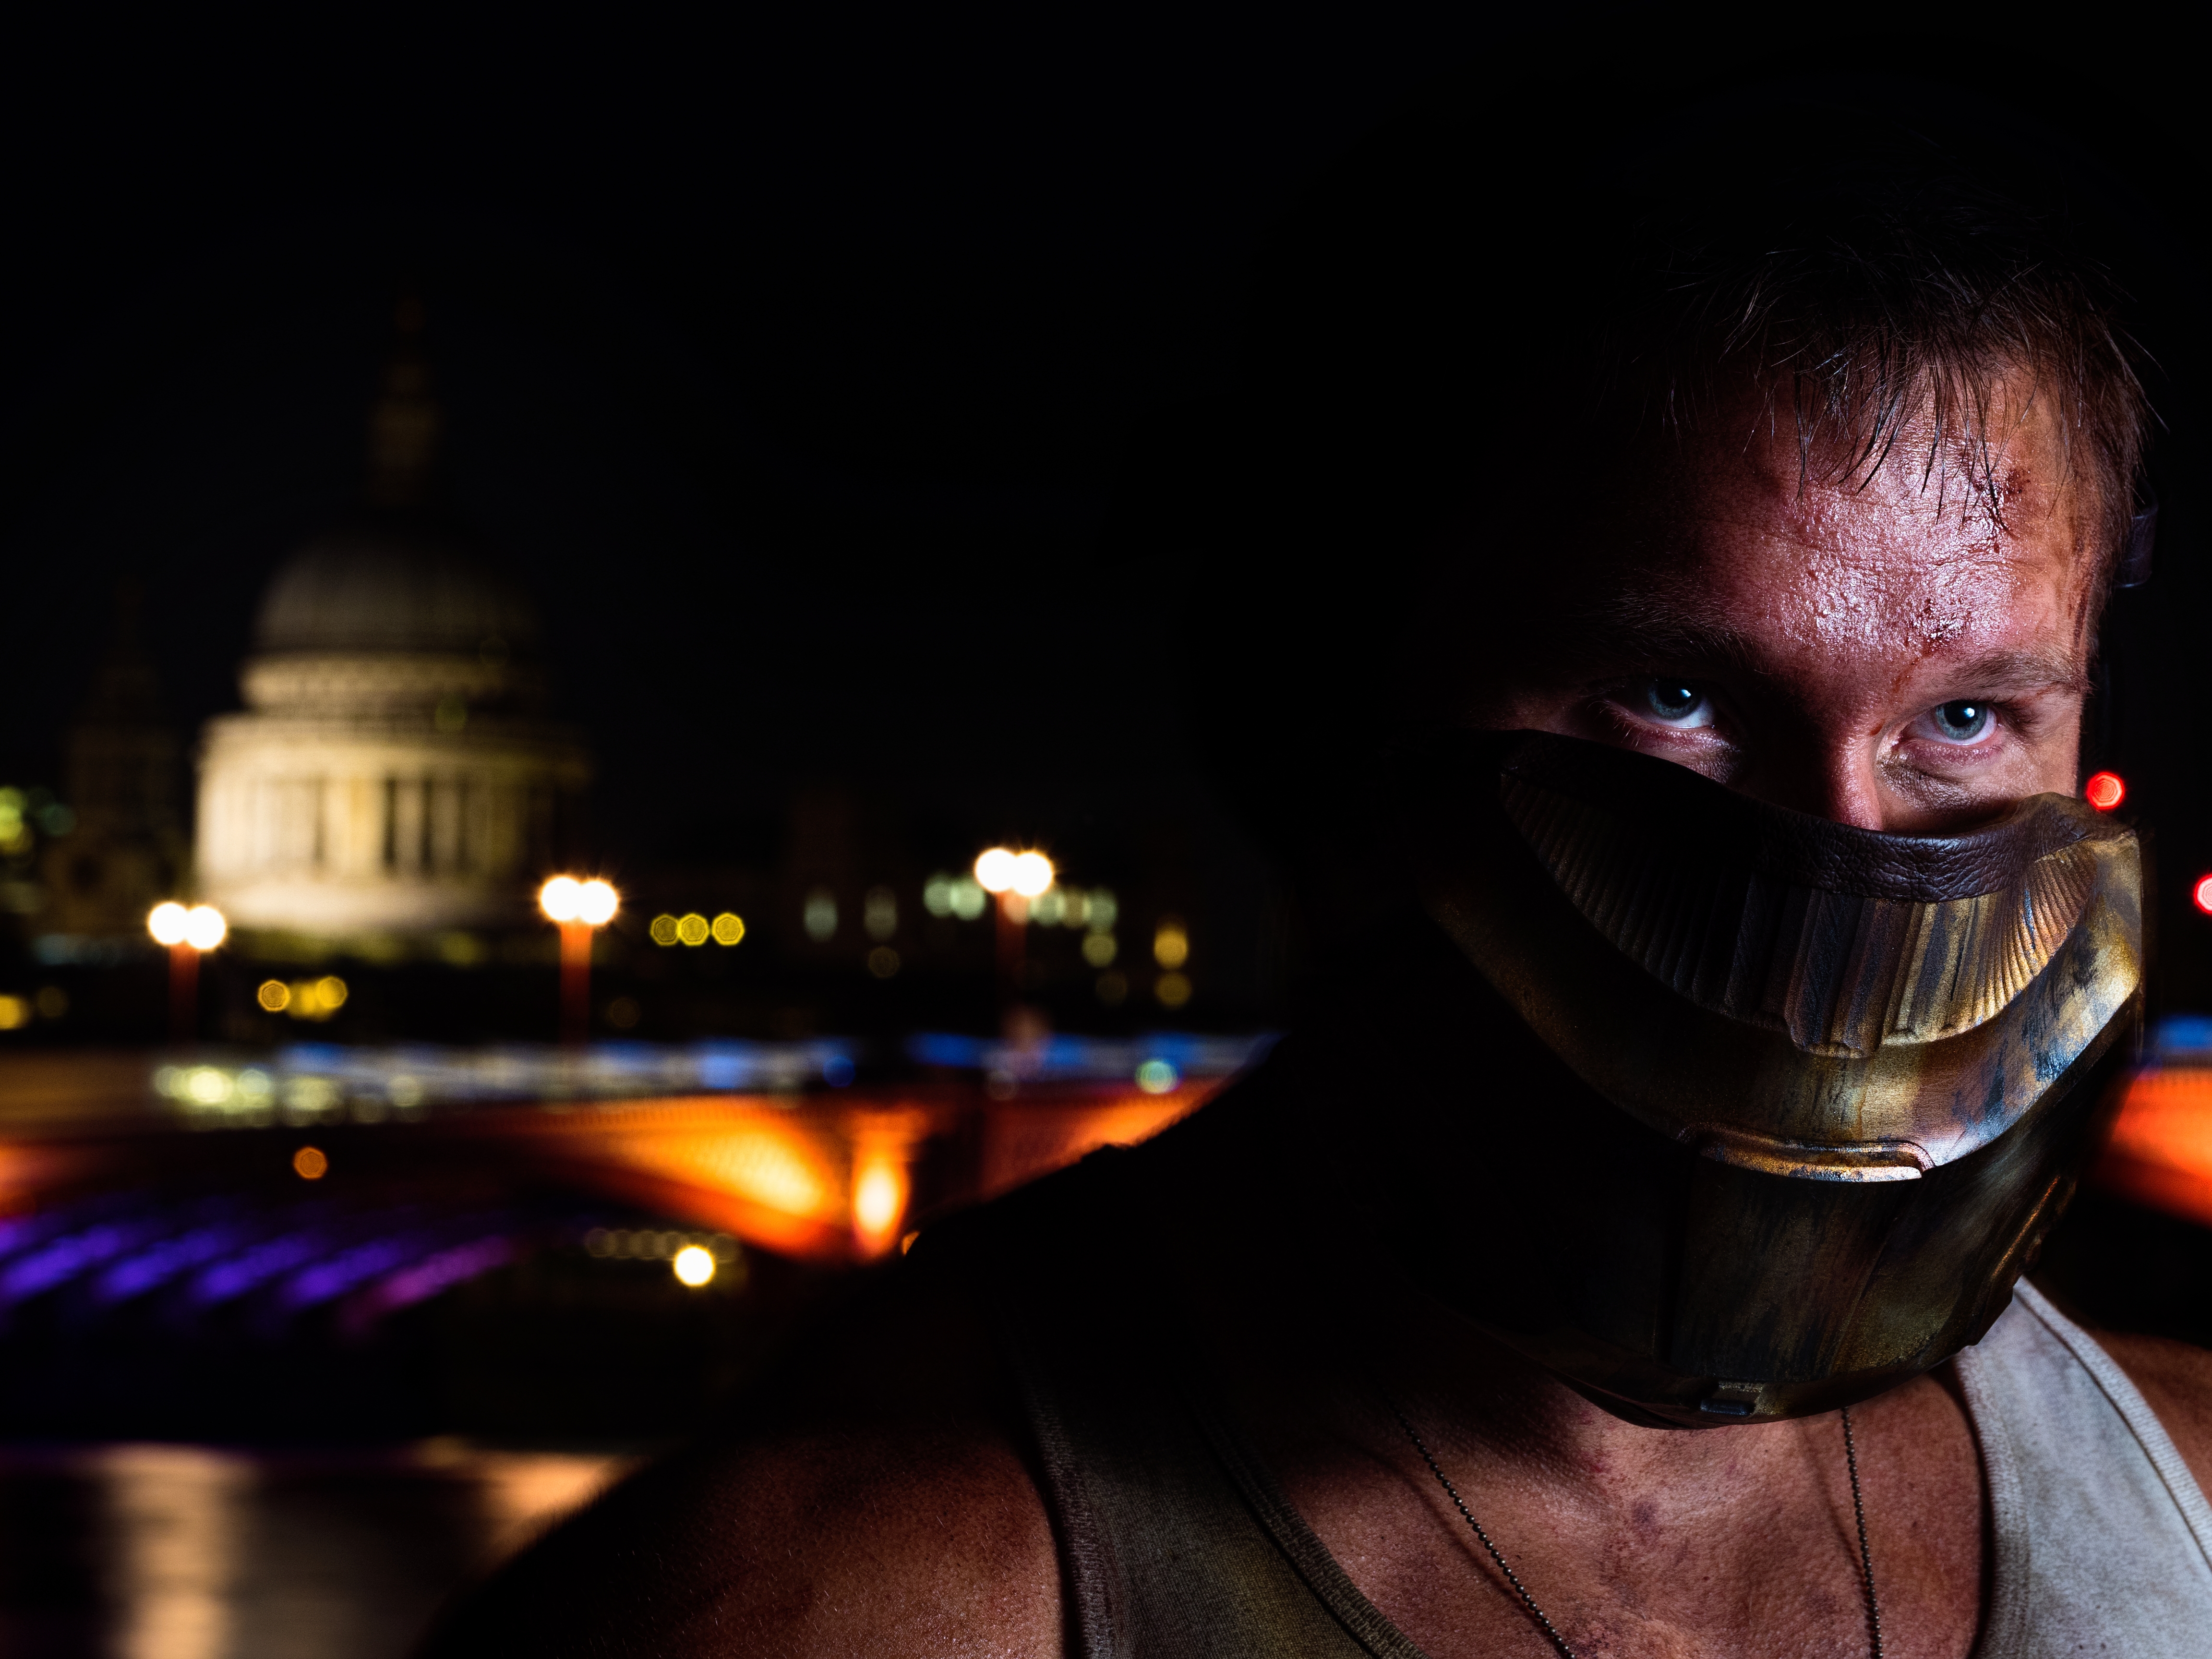 London Warrior, Actor: Daniel Stisen